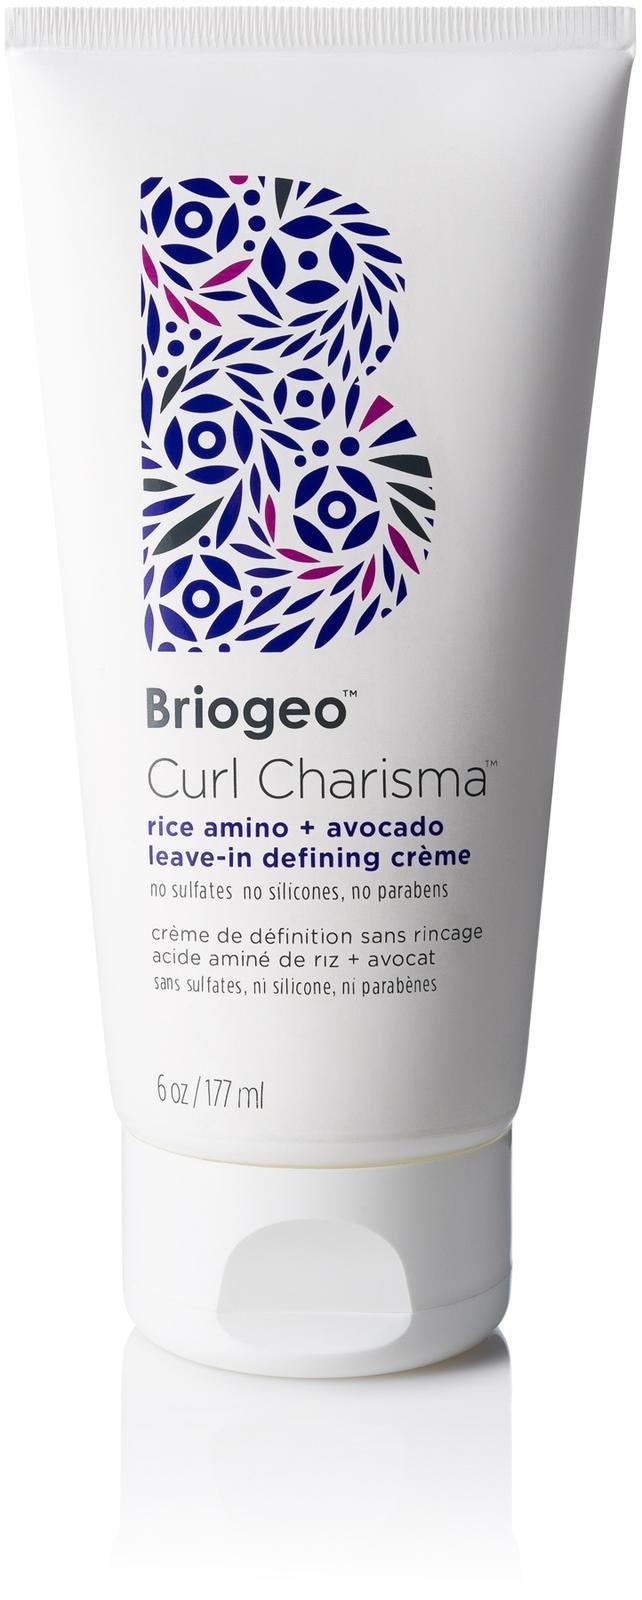 Briogeo Curl Charisma Rice Amino + Avocado Leave-in Defining Crme - 6 Oz